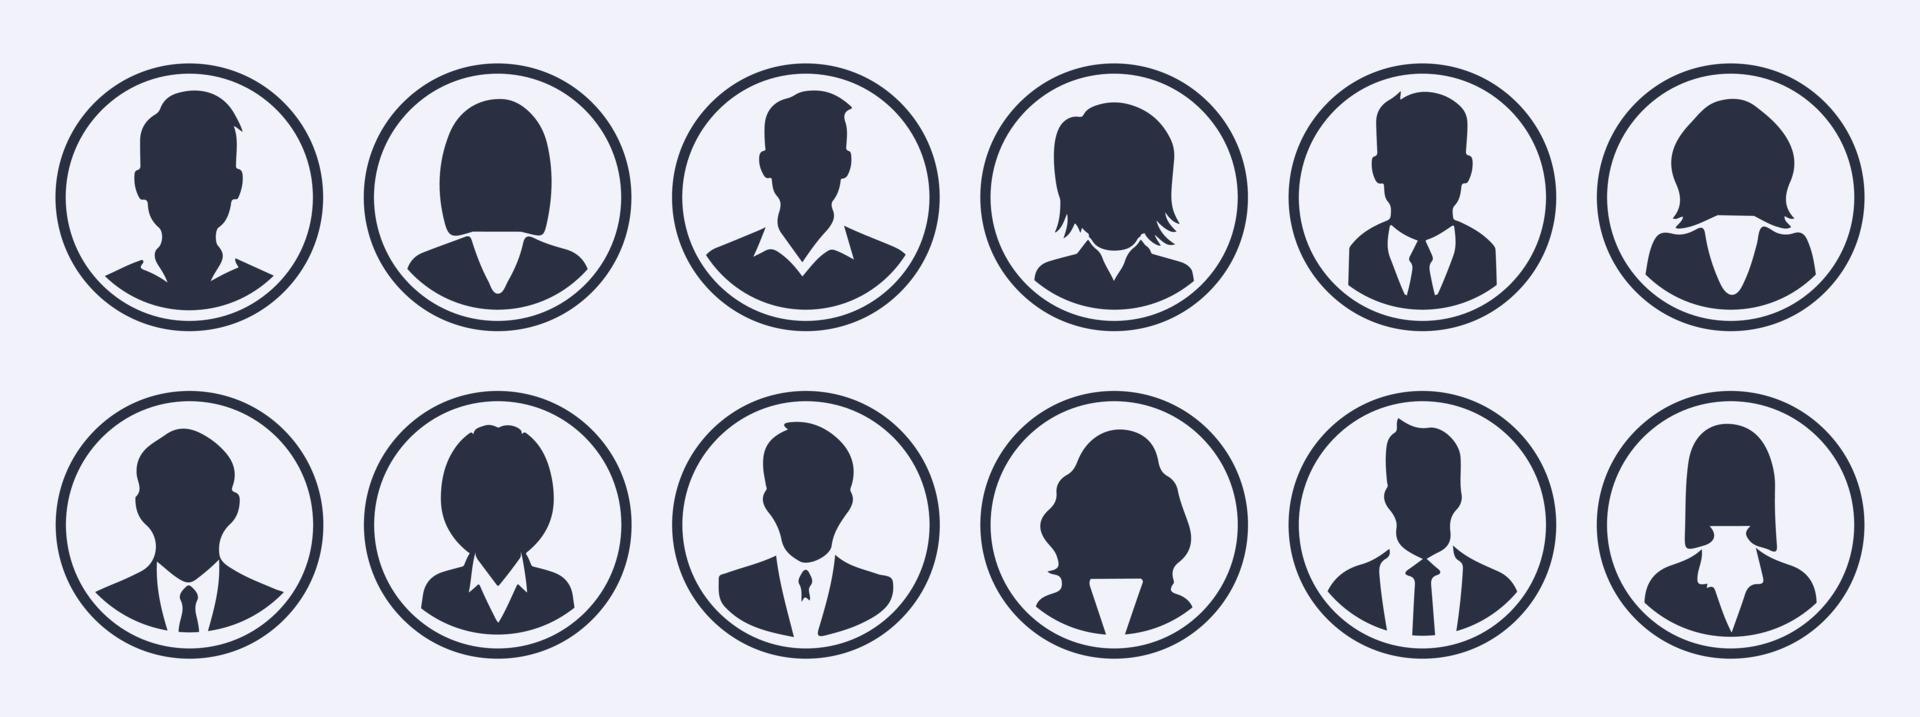 affaires gens avatar profil tête icône silhouette ensemble affaires homme femme utilisateur visage avatars Icônes silhouettes vecteur illustration